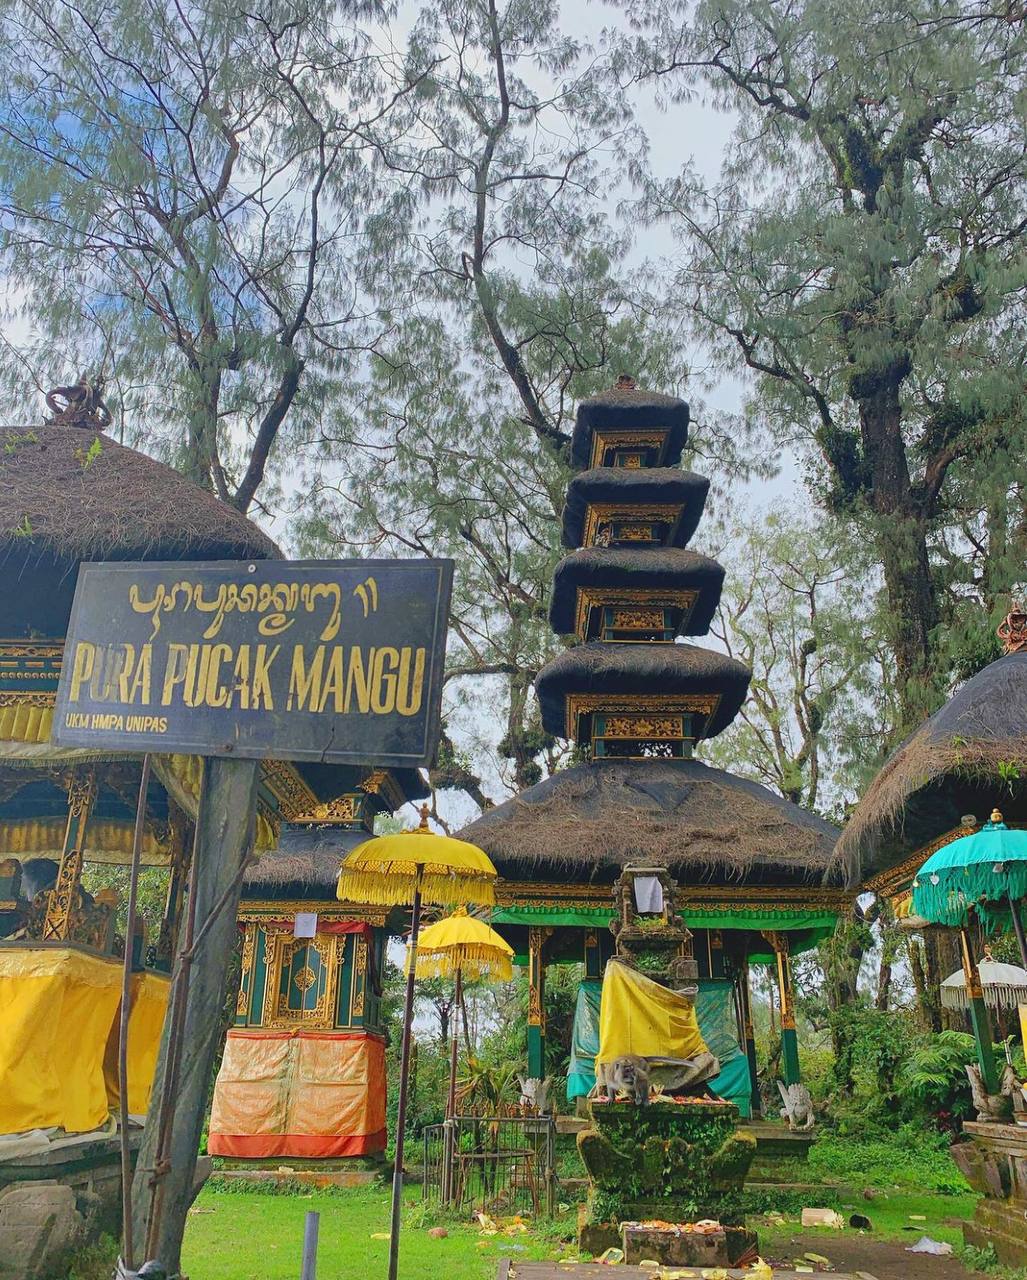 Intip Keindahan Pesona Alam dan Fakta Menarik Lainnya Dari Puncak Mangu Kaldera Gunung Catur, Badung Bali